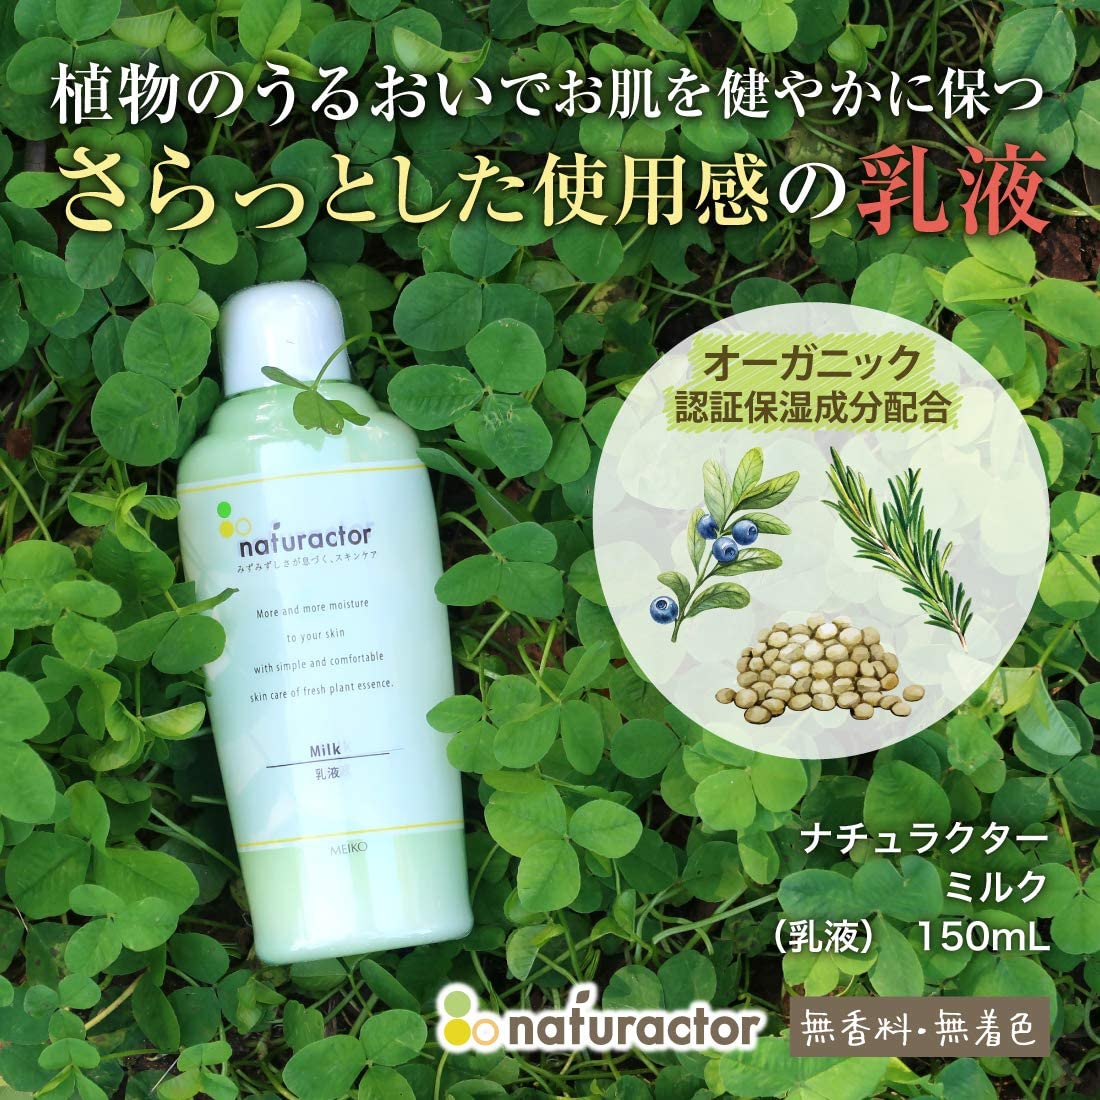 メイコー化粧品(MEIKO) ナチュラクター ミルクの商品画像3 